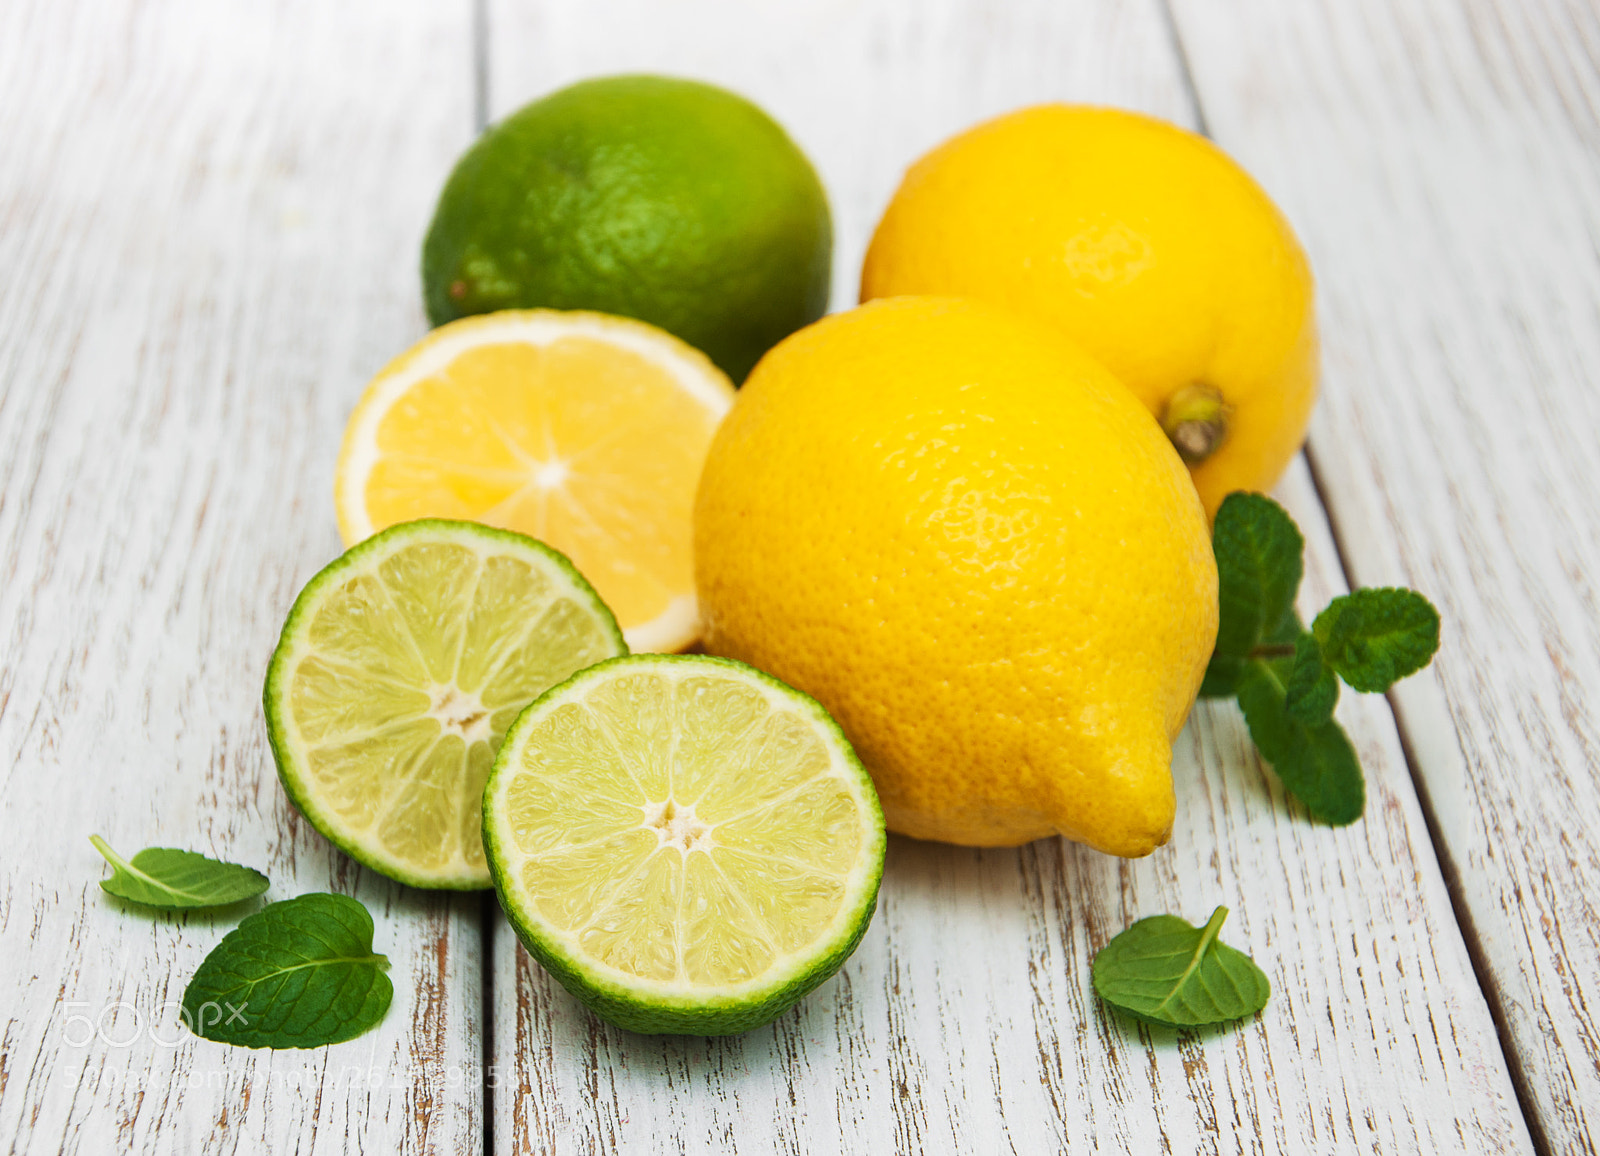 Nikon D90 sample photo. Lemons and limes photography